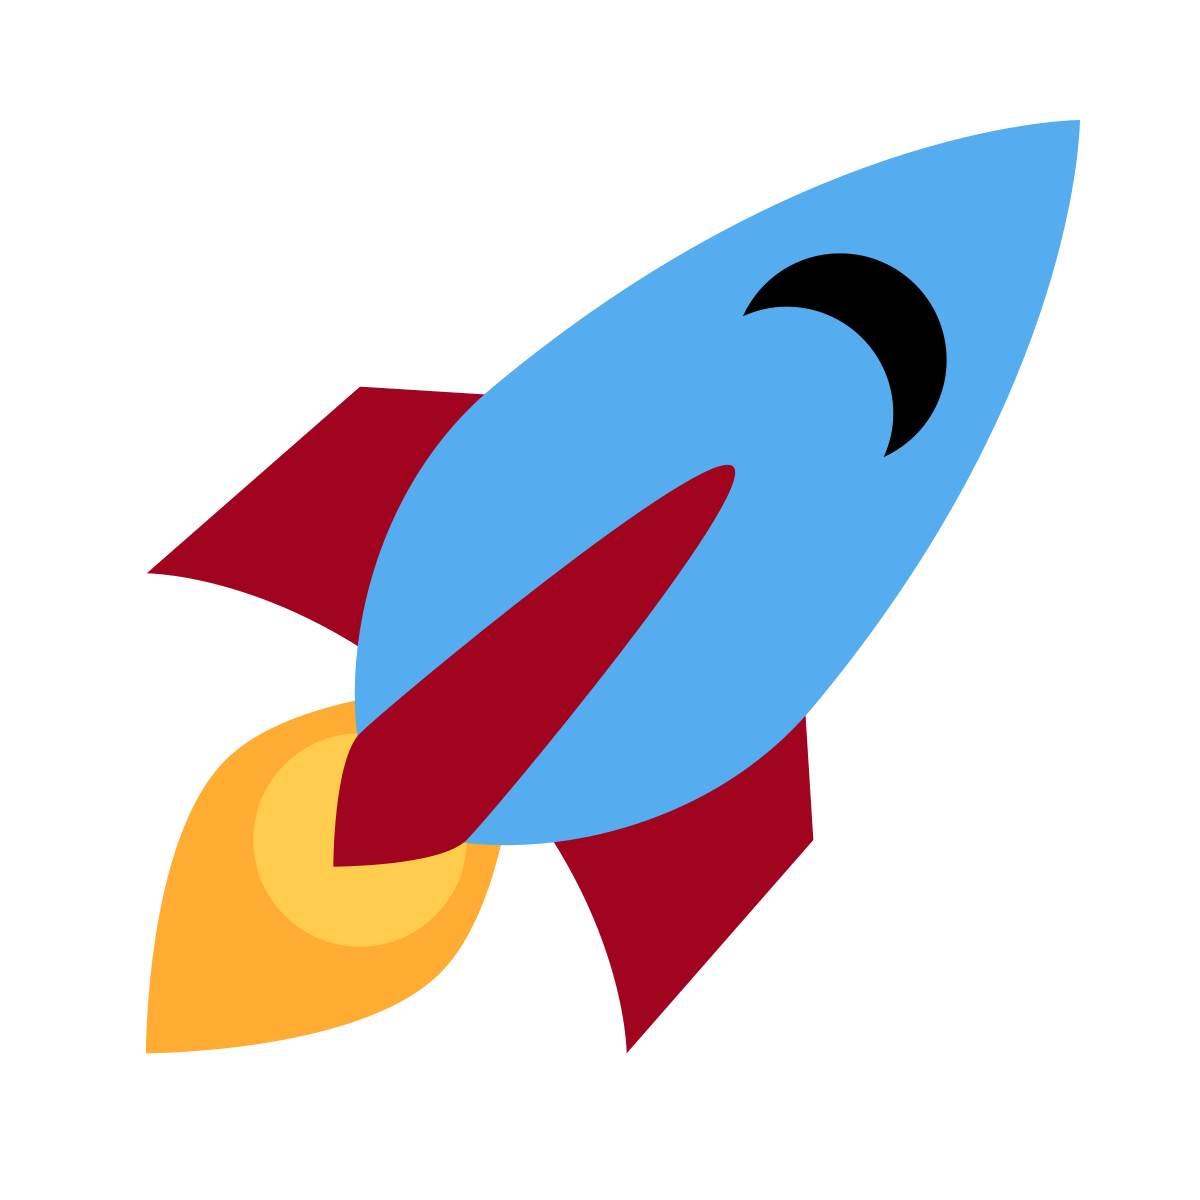 Rocket Emoji PNG Image